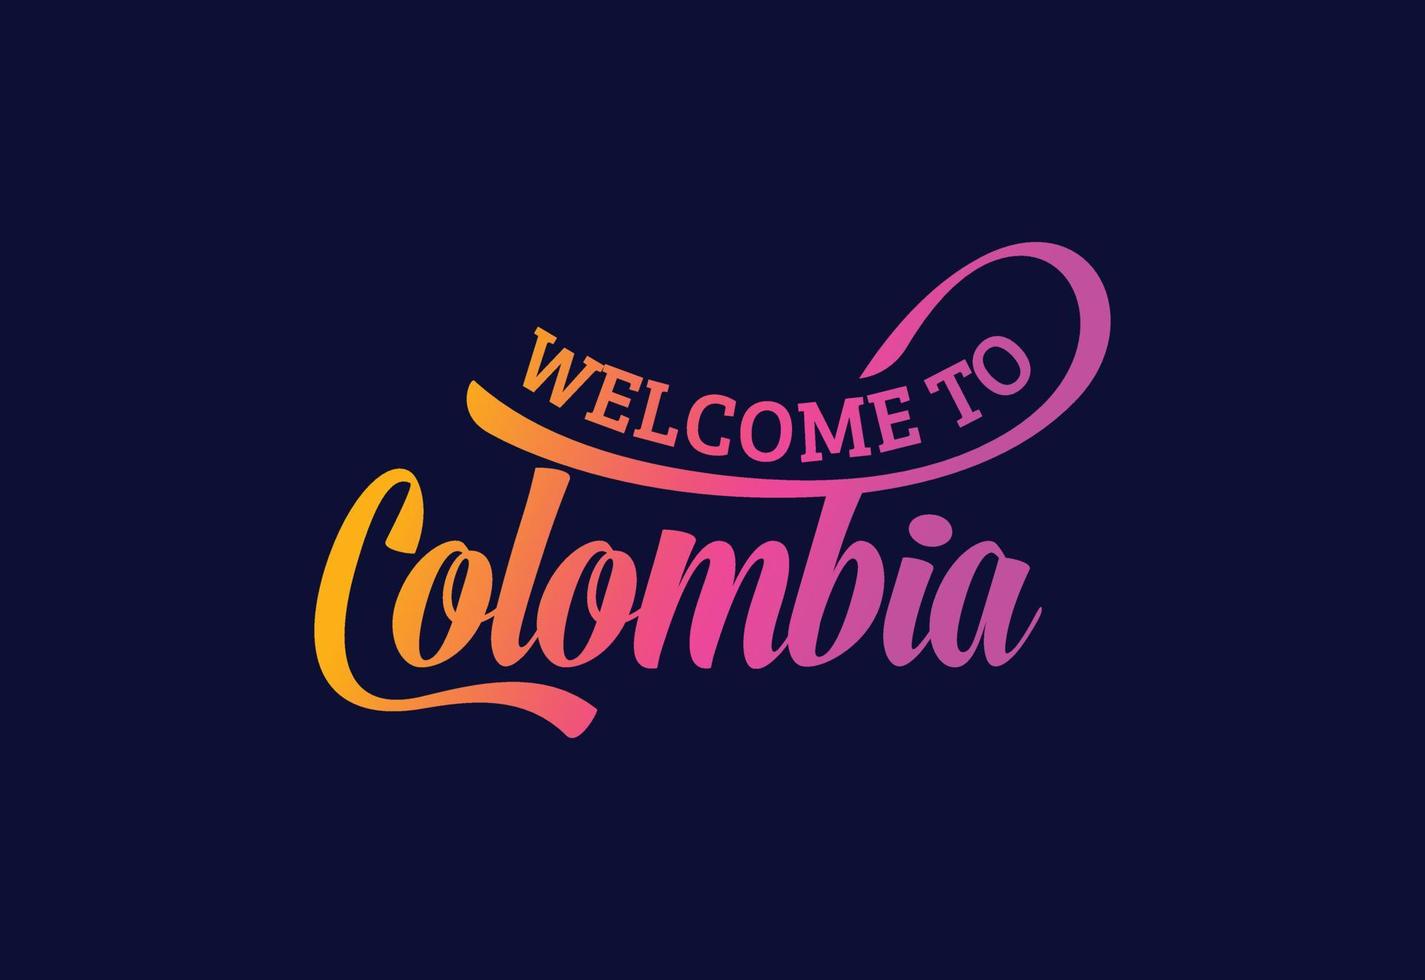 välkommen till colombia ordtext kreativ teckensnittsdesignillustration. välkomstskylt vektor